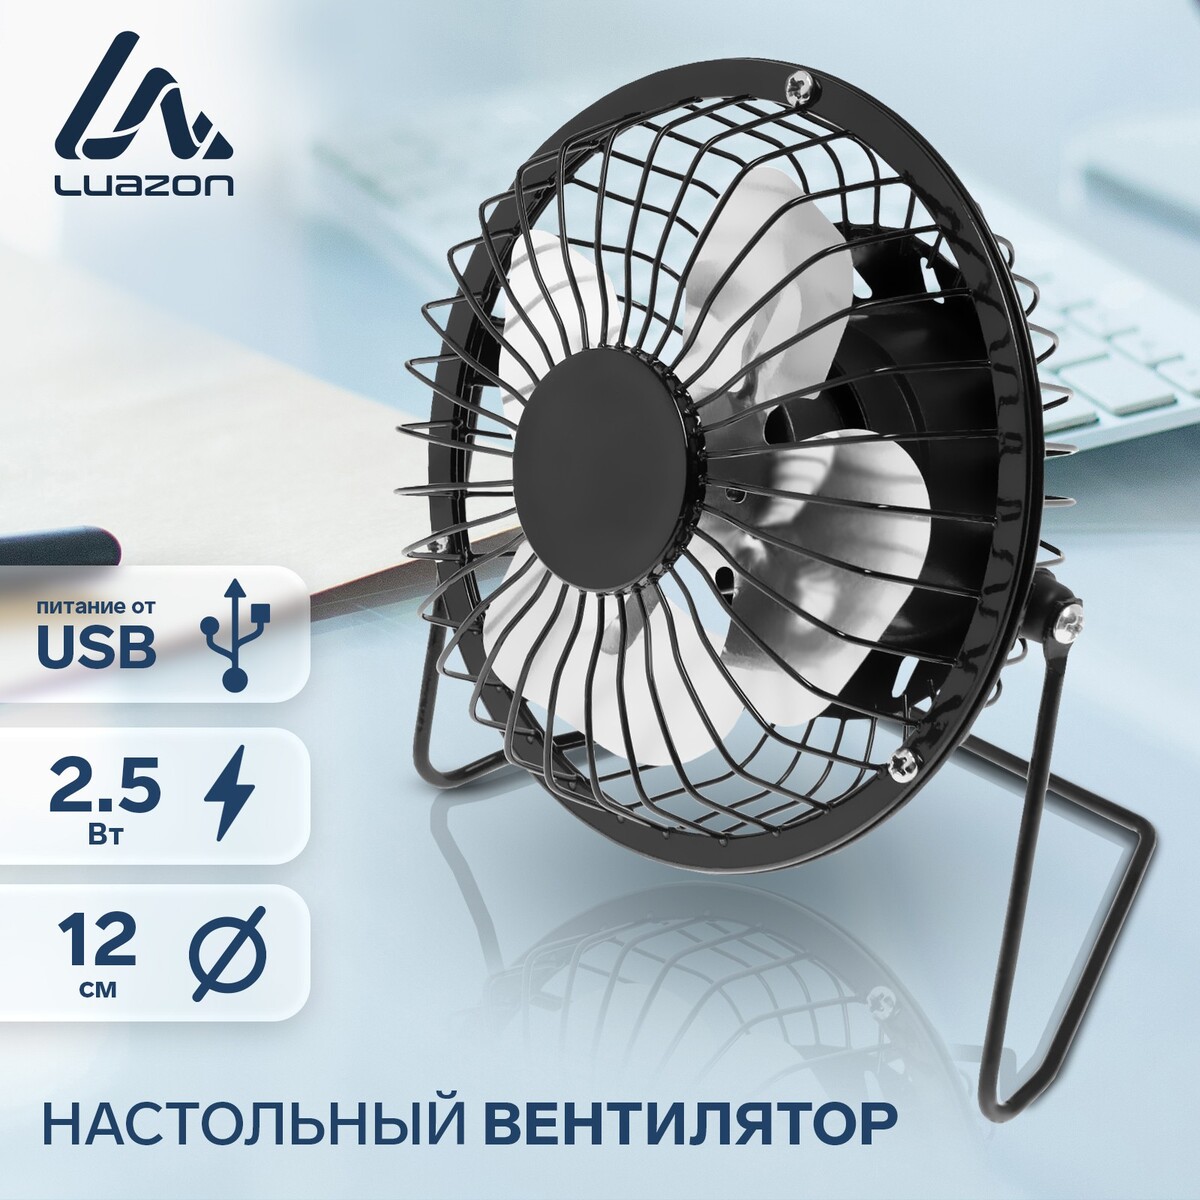 Вентилятор luazon lof-05, настольный, 2.5 вт, 12 см, металл, черный весы кухонные luazon lve 028 электронные до 5 кг металл